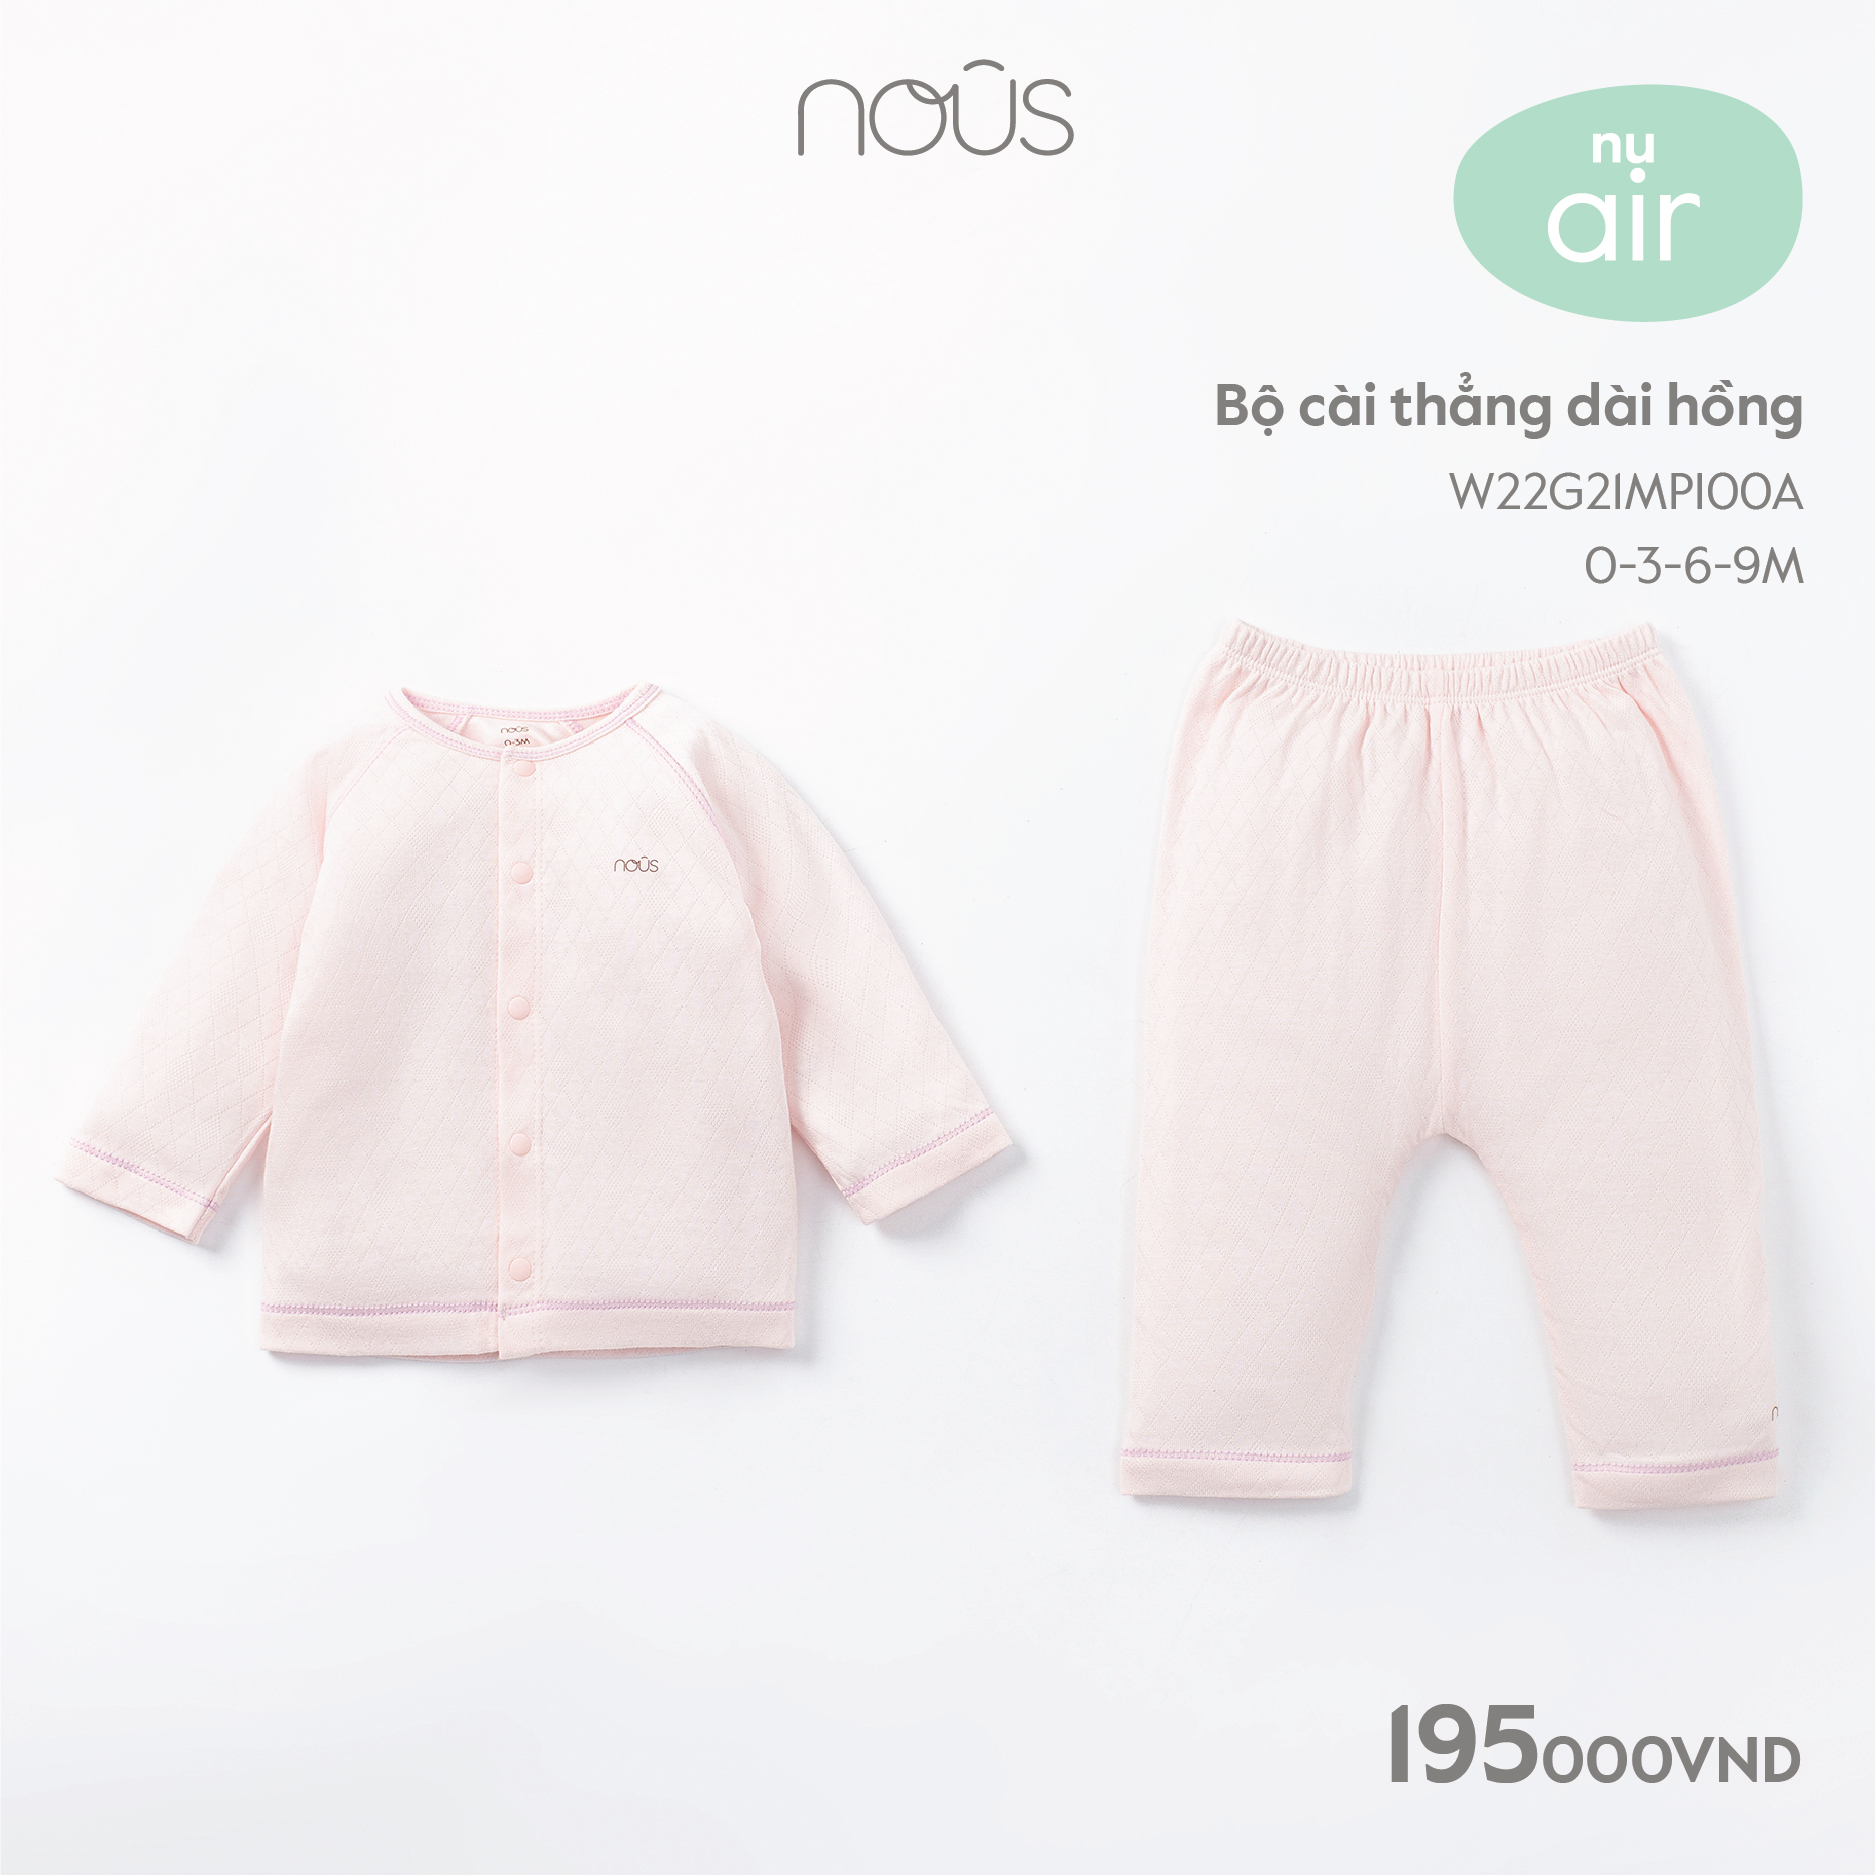 Bộ quần áo dài tay Nous nhiều màu sắc họa tiết dễ thương dành cho bé trai, bé gái size 0-3 tháng đến 2-3 tuổi